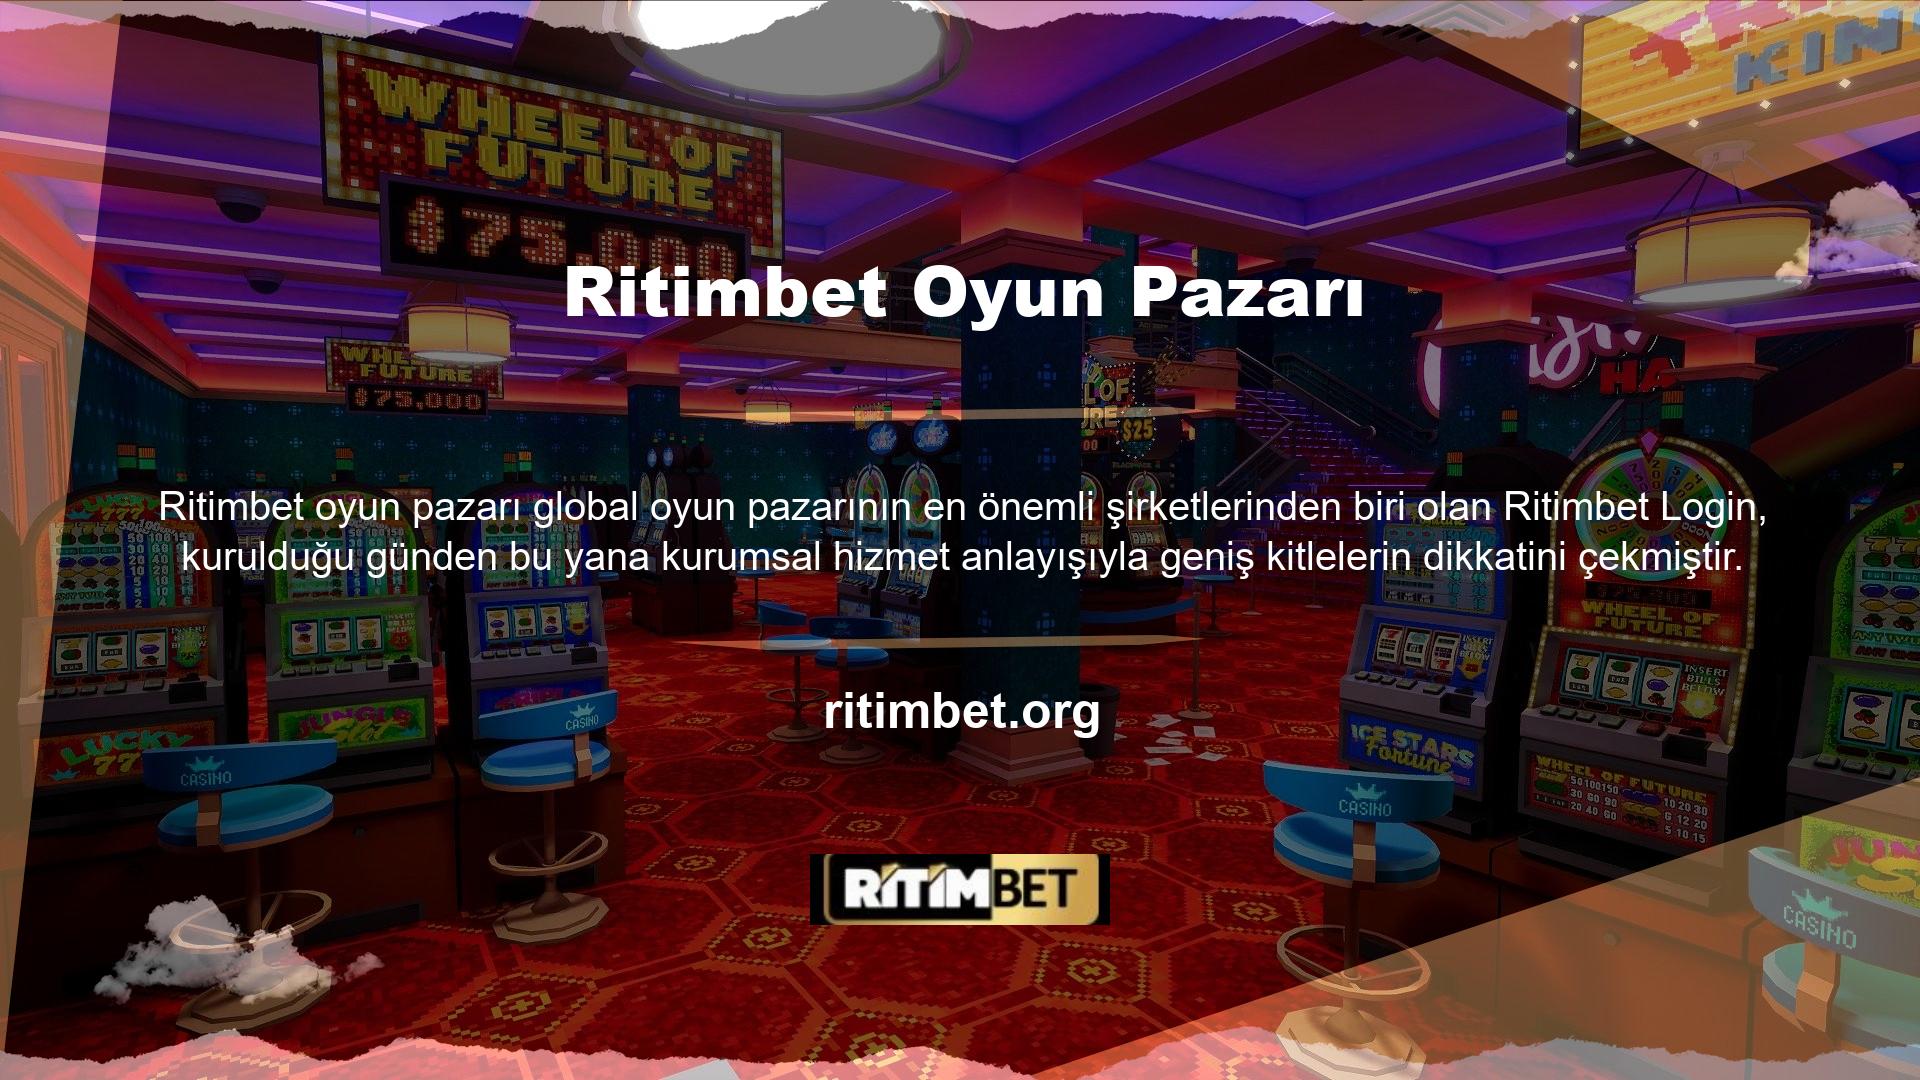 Bu site Türkçe dilini desteklemektedir ve oyun çeşitliliği ve hacmiyle öne çıkan Türkiye'de büyük bir potansiyele sahiptir